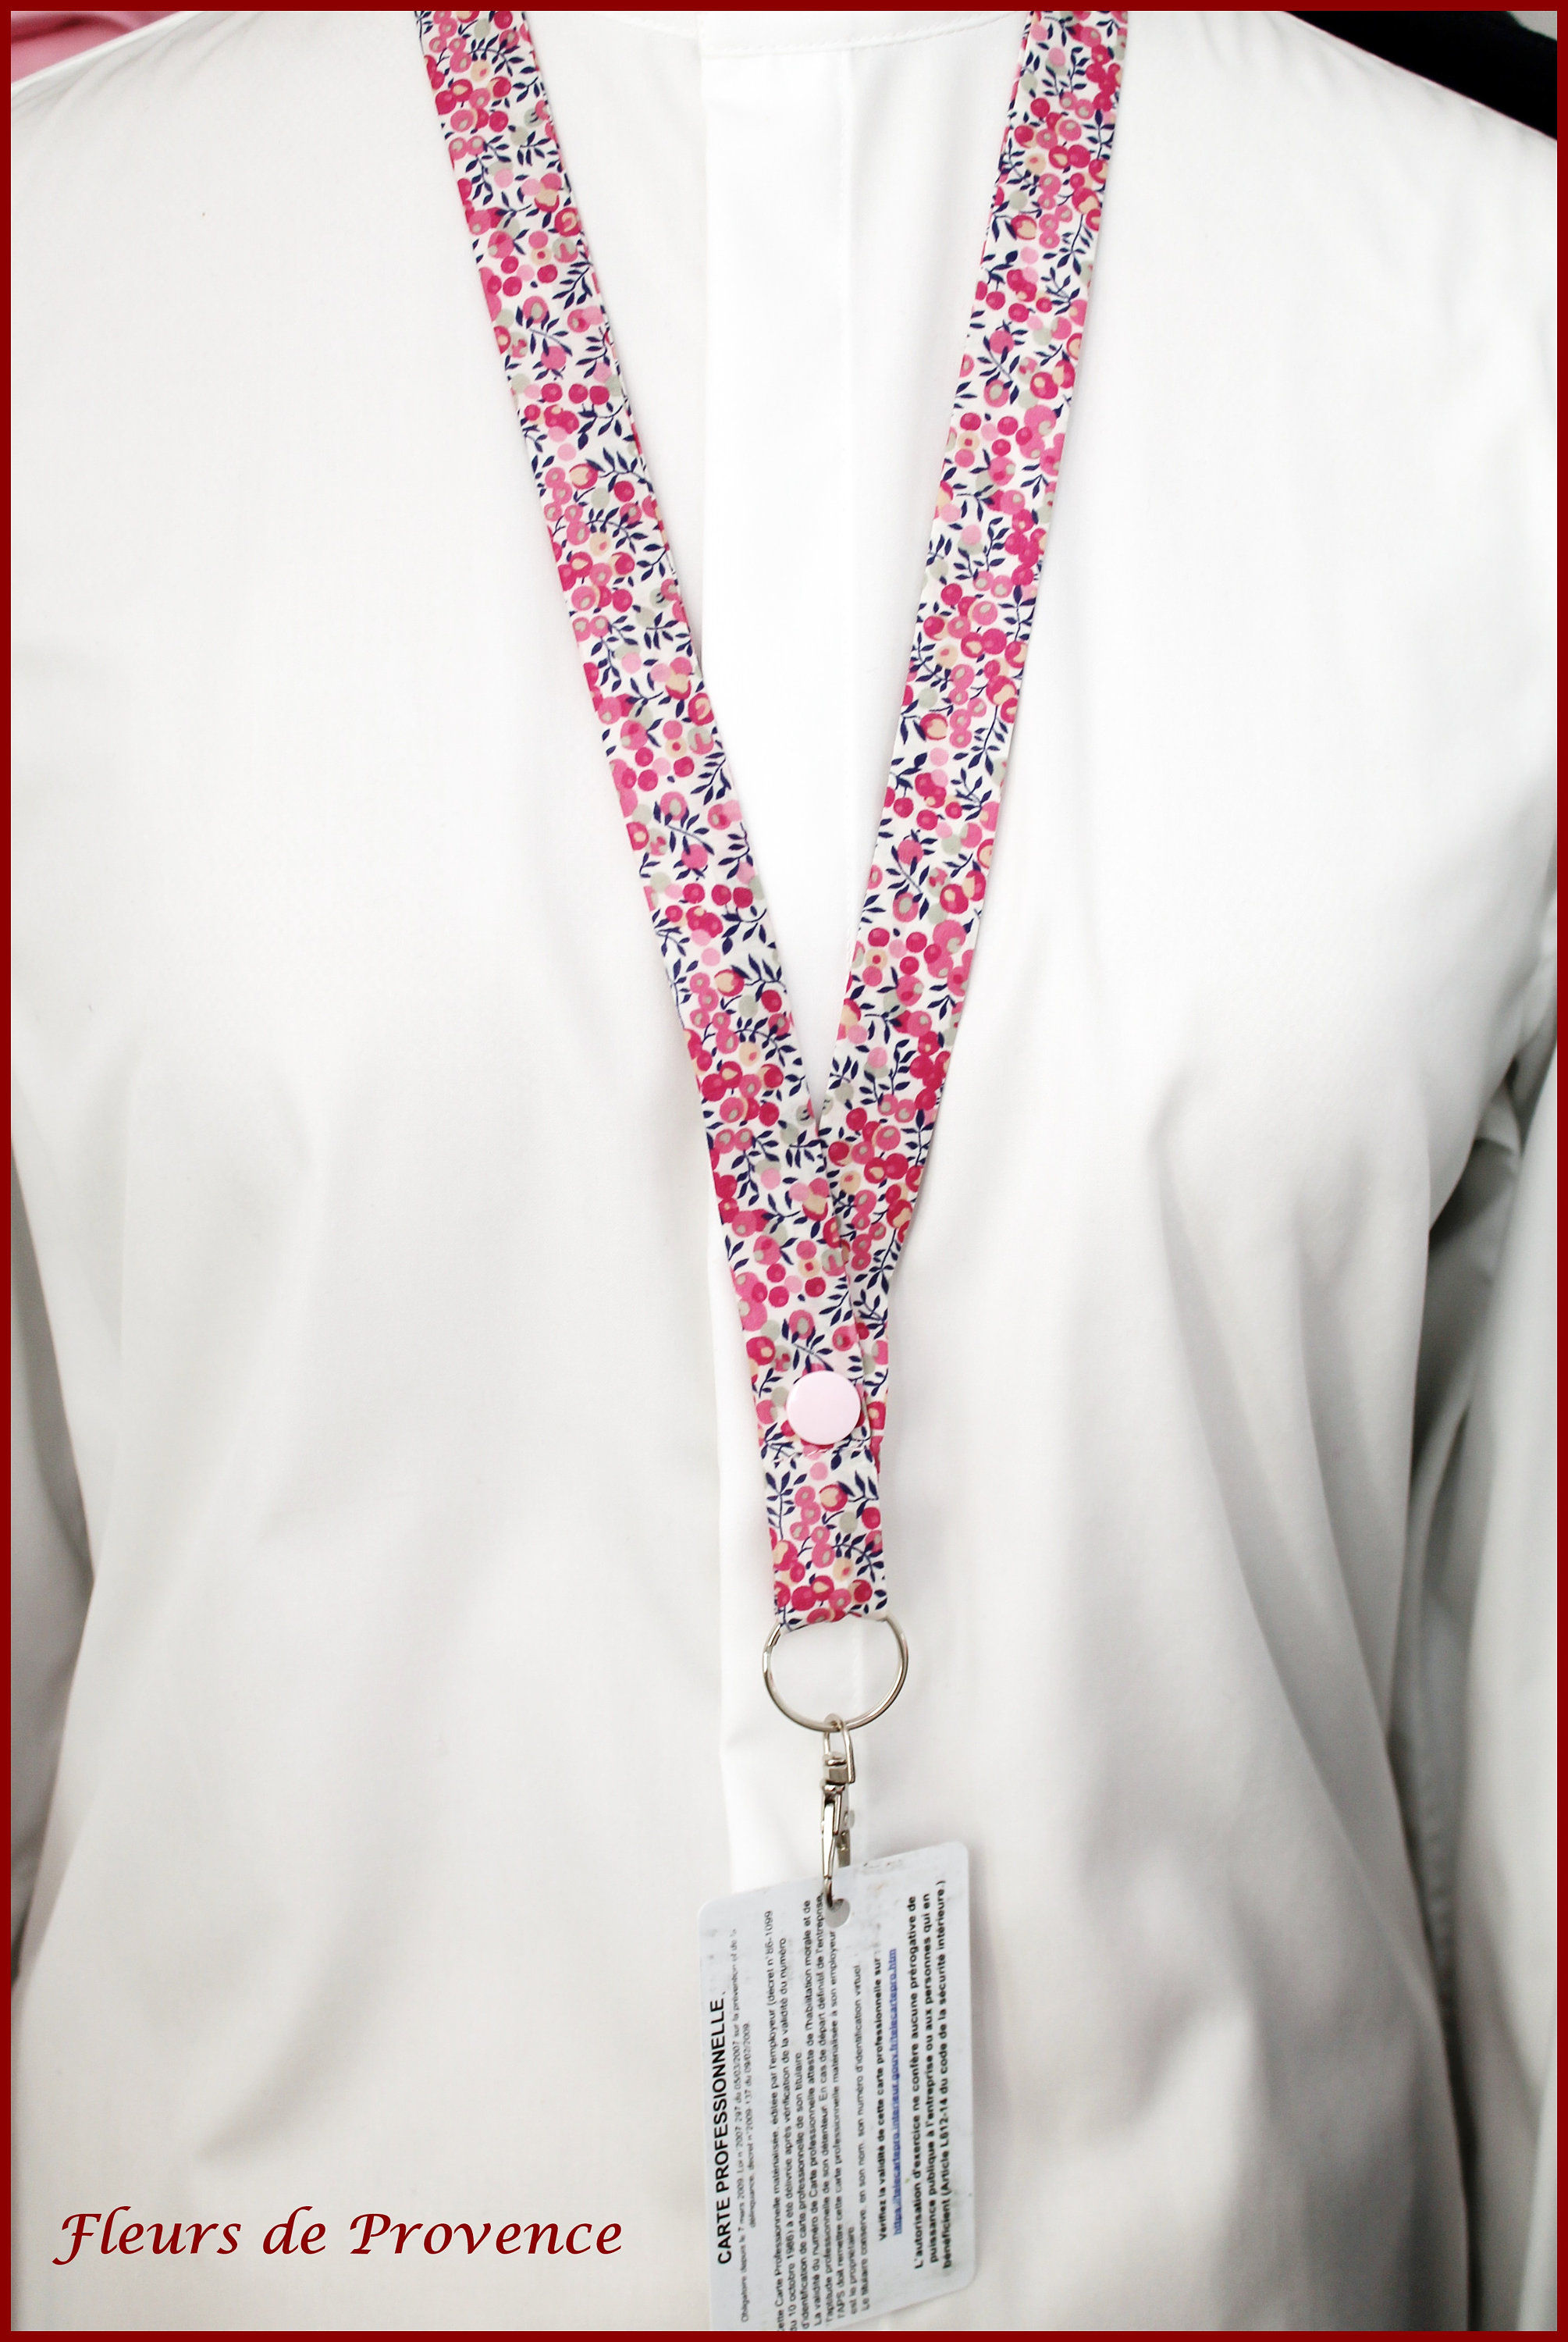 Fleurs de Provence - Pochette infirmière / Porte badge infirmière